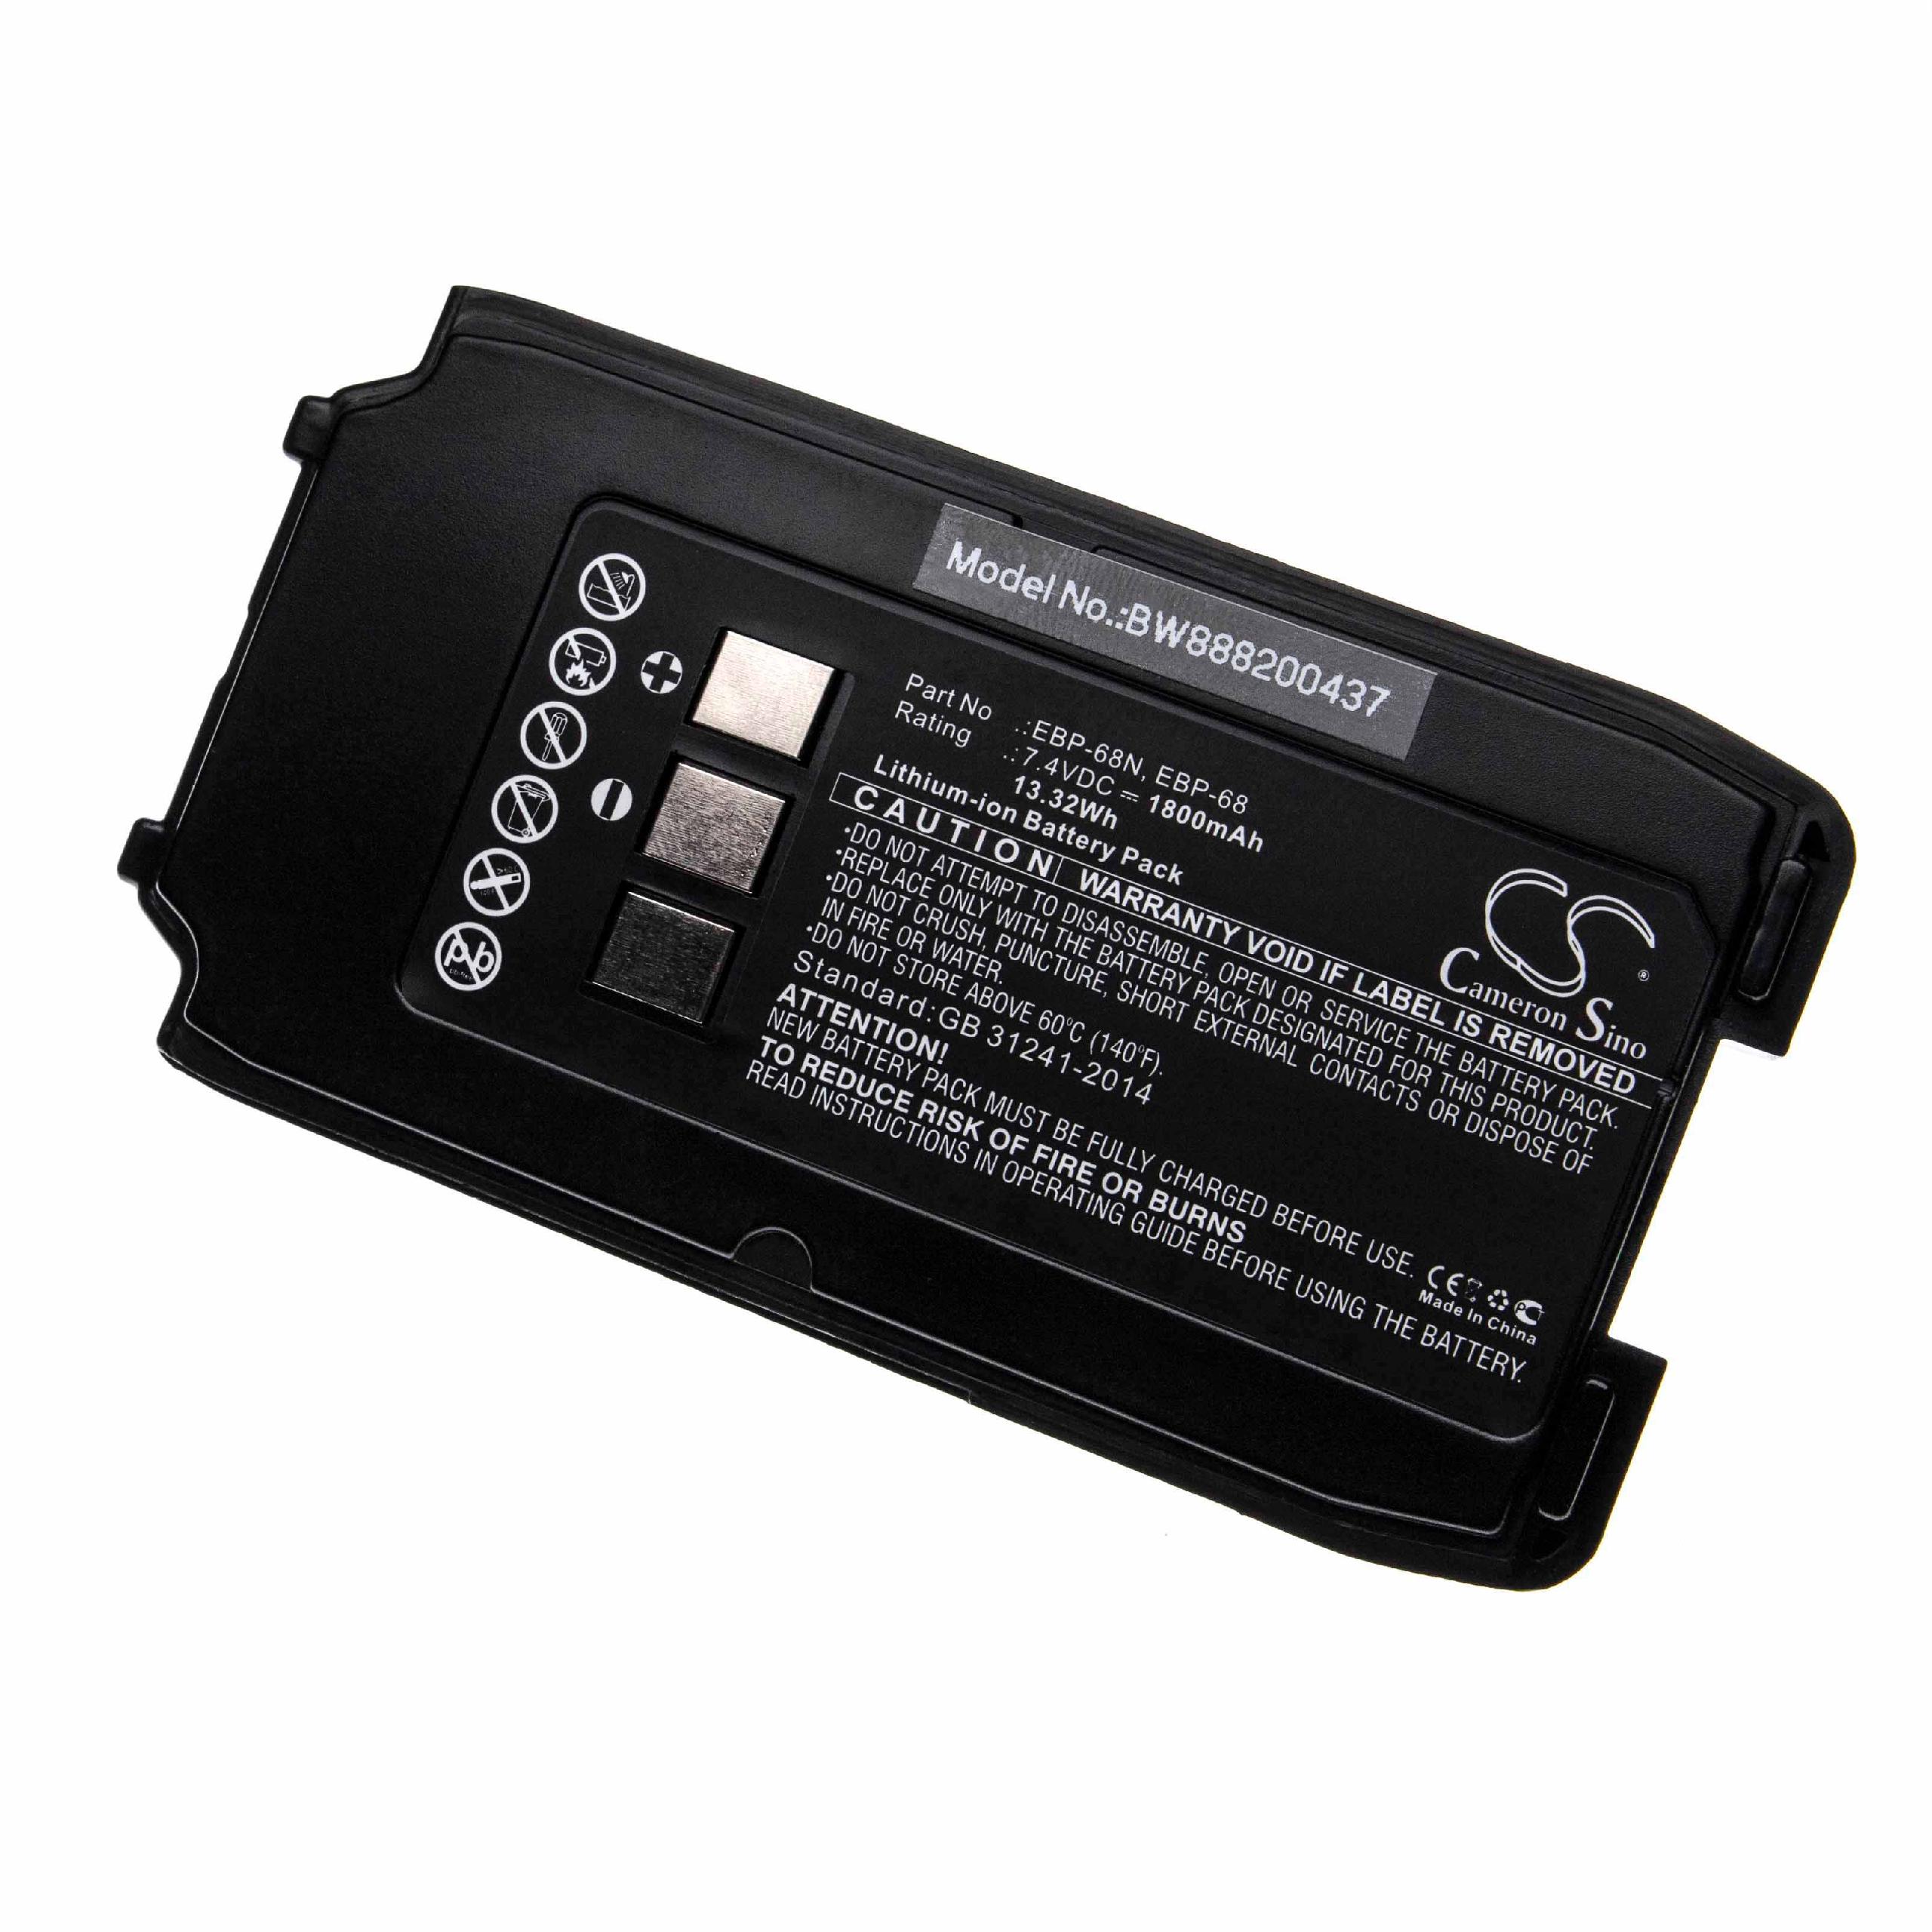 Batterie remplace Alinco EBP-68, EBP-68N pour radio talkie-walkie - 1800mAh 7,4V Li-ion